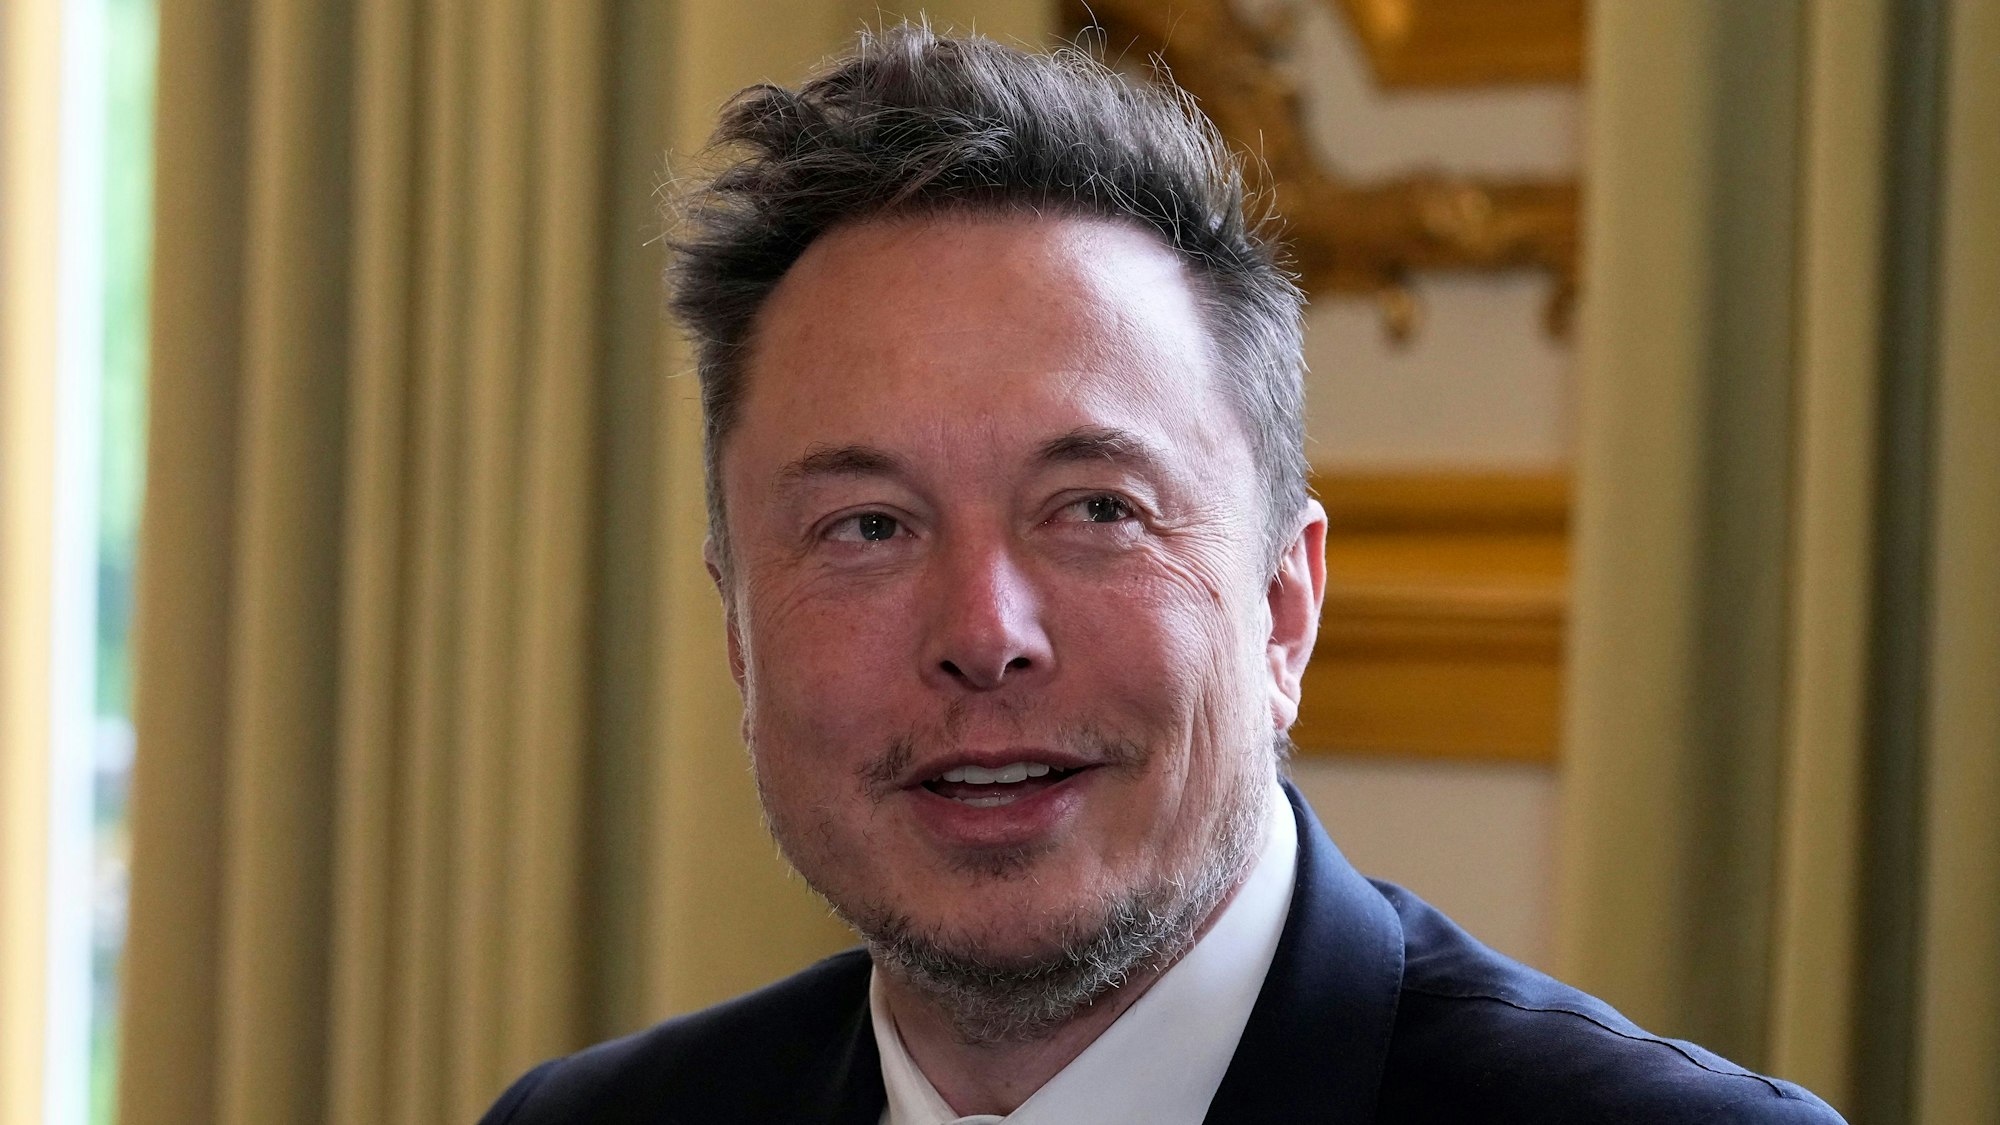 Es ist Elon Musk zu sehen, der leicht lächelnd an der Kamera vorbeischaut.